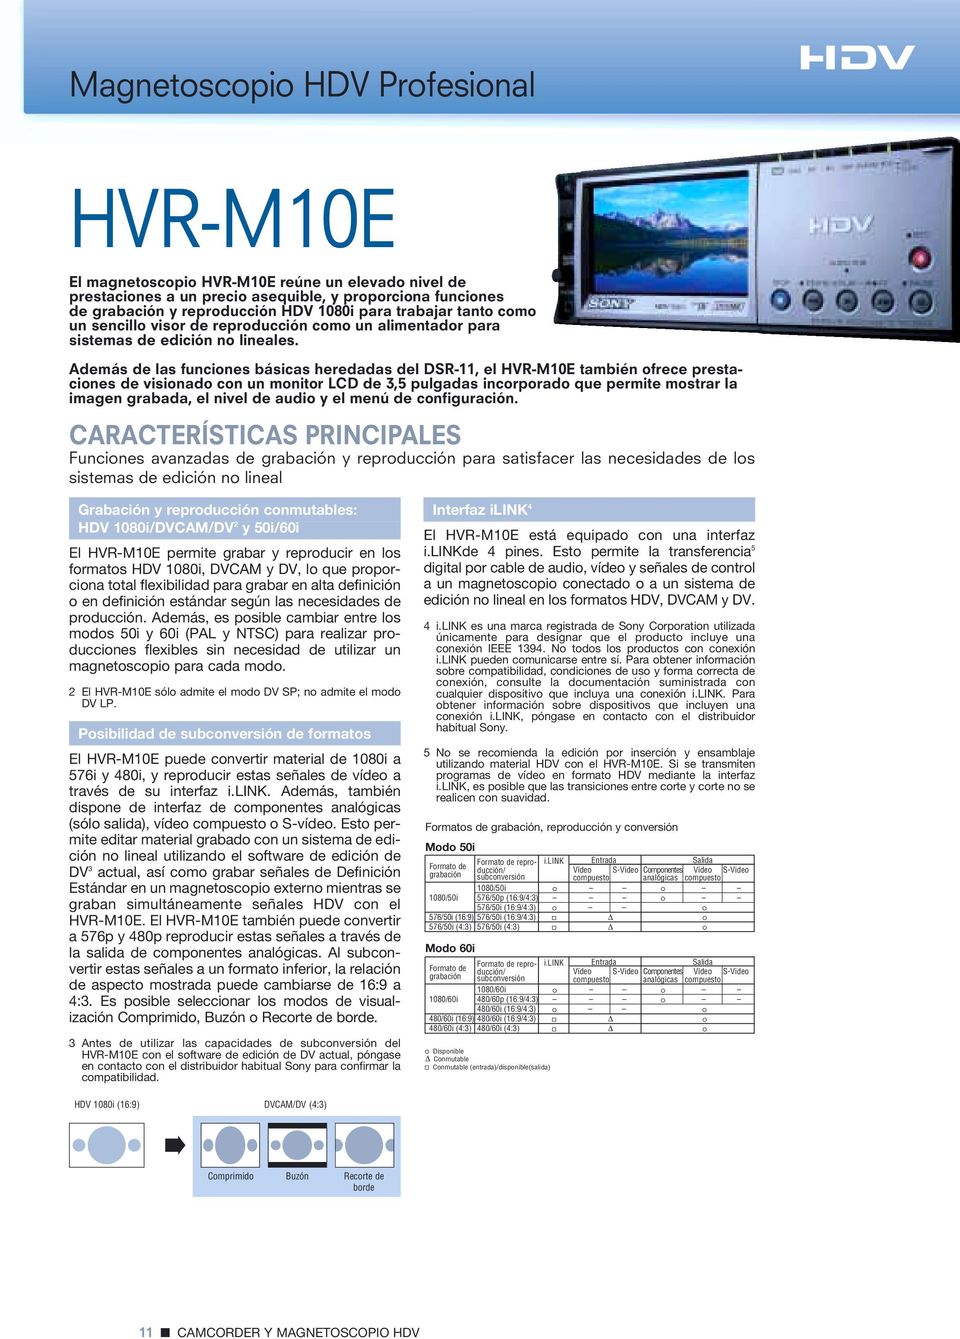 Además de las funciones básicas heredadas del DSR-11, el HVR-M10E también ofrece prestaciones de visionado con un monitor LCD de 3,5 pulgadas incorporado que permite mostrar la imagen grabada, el